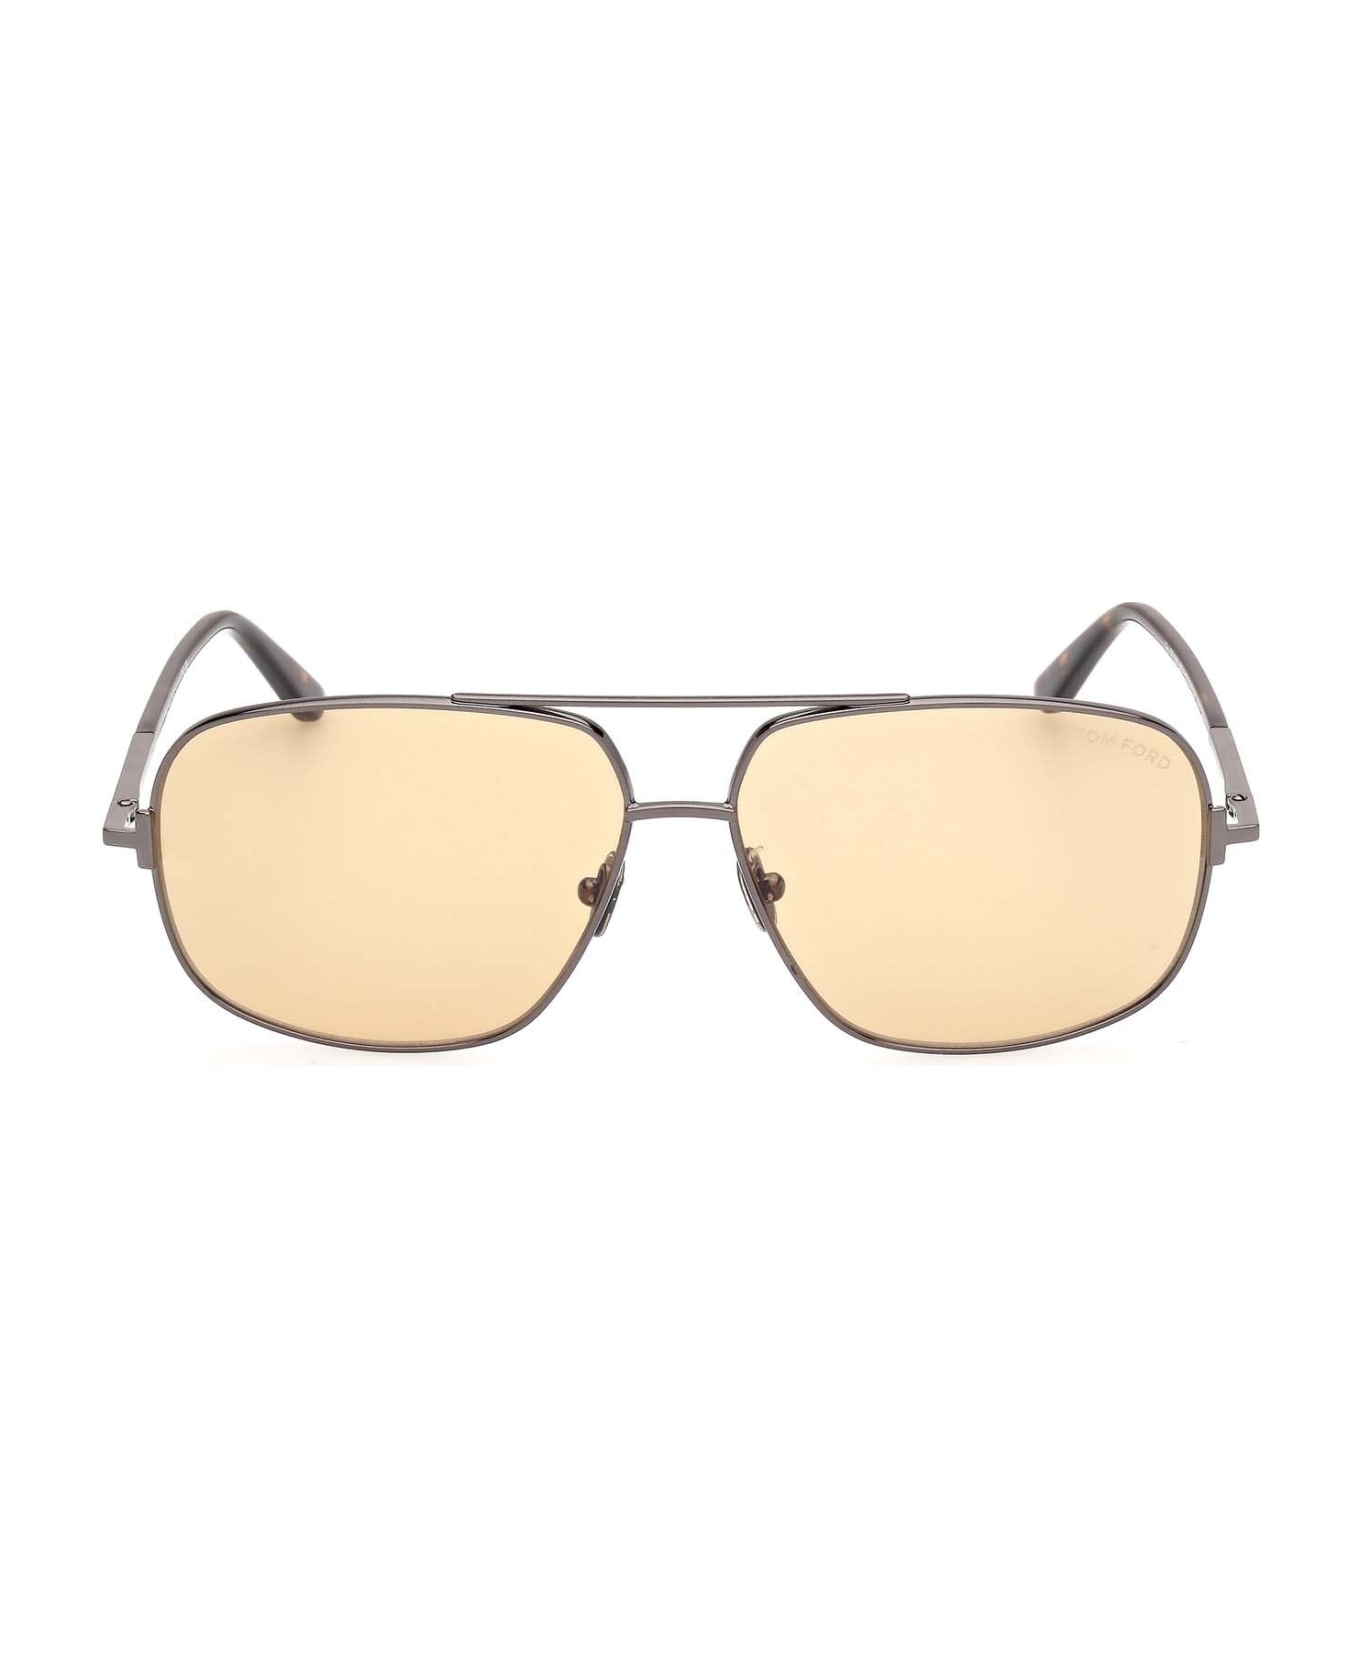 Tom Ford Eyewear Sunglasses - Grigio/Marrone